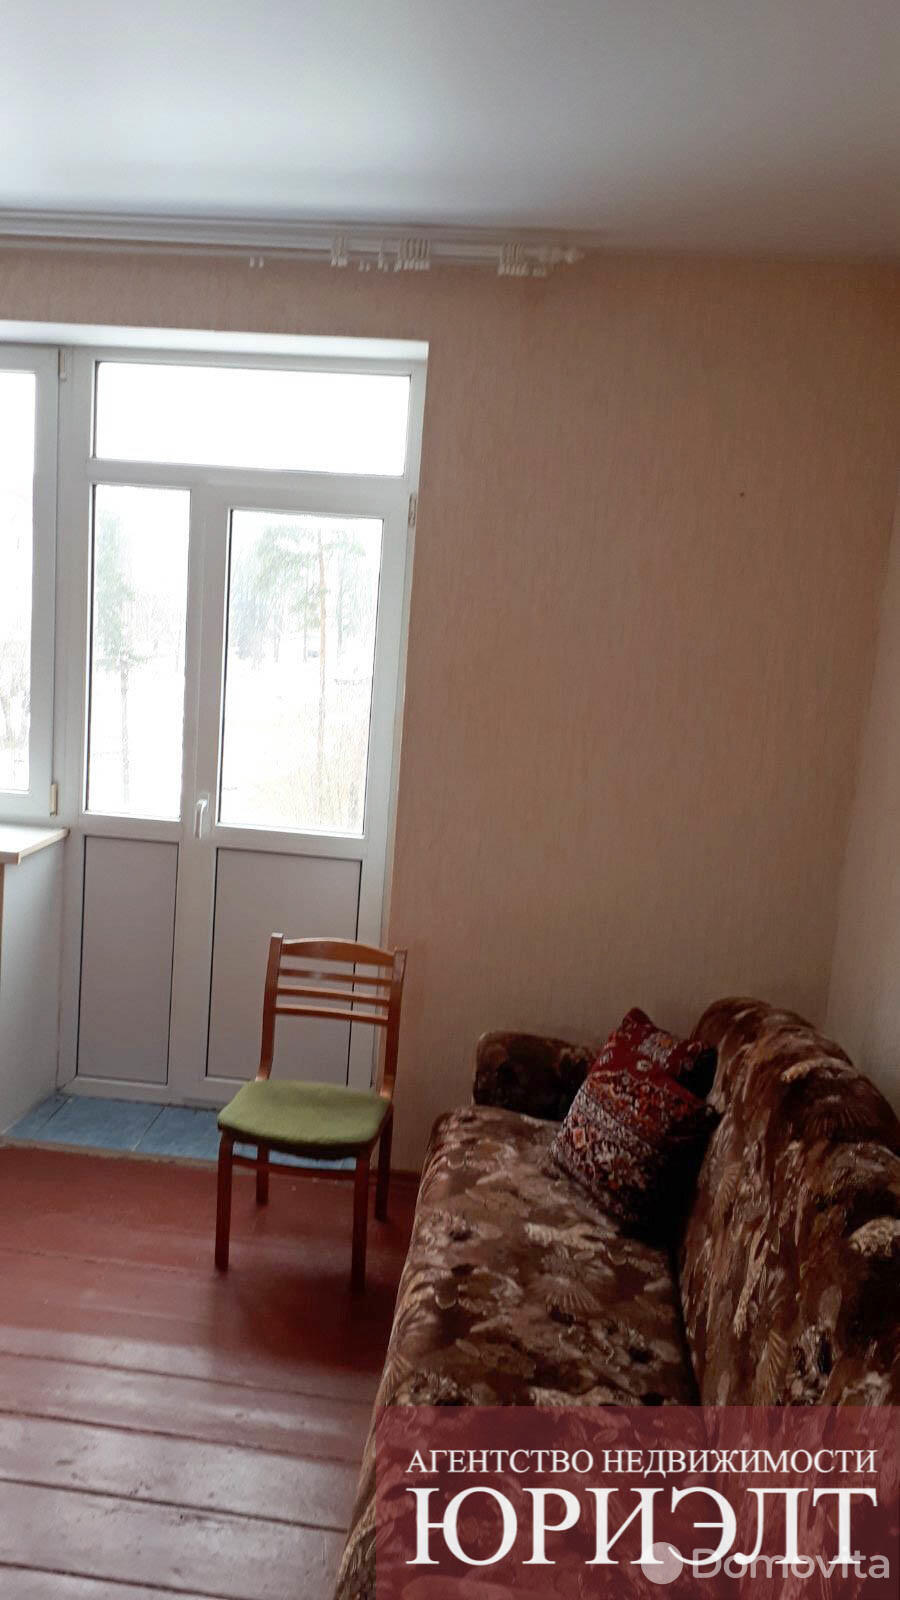 Купить комнату в Борисове, ул. Серебренникова, д. 2, цена 6200 USD, код 6162 - фото 4